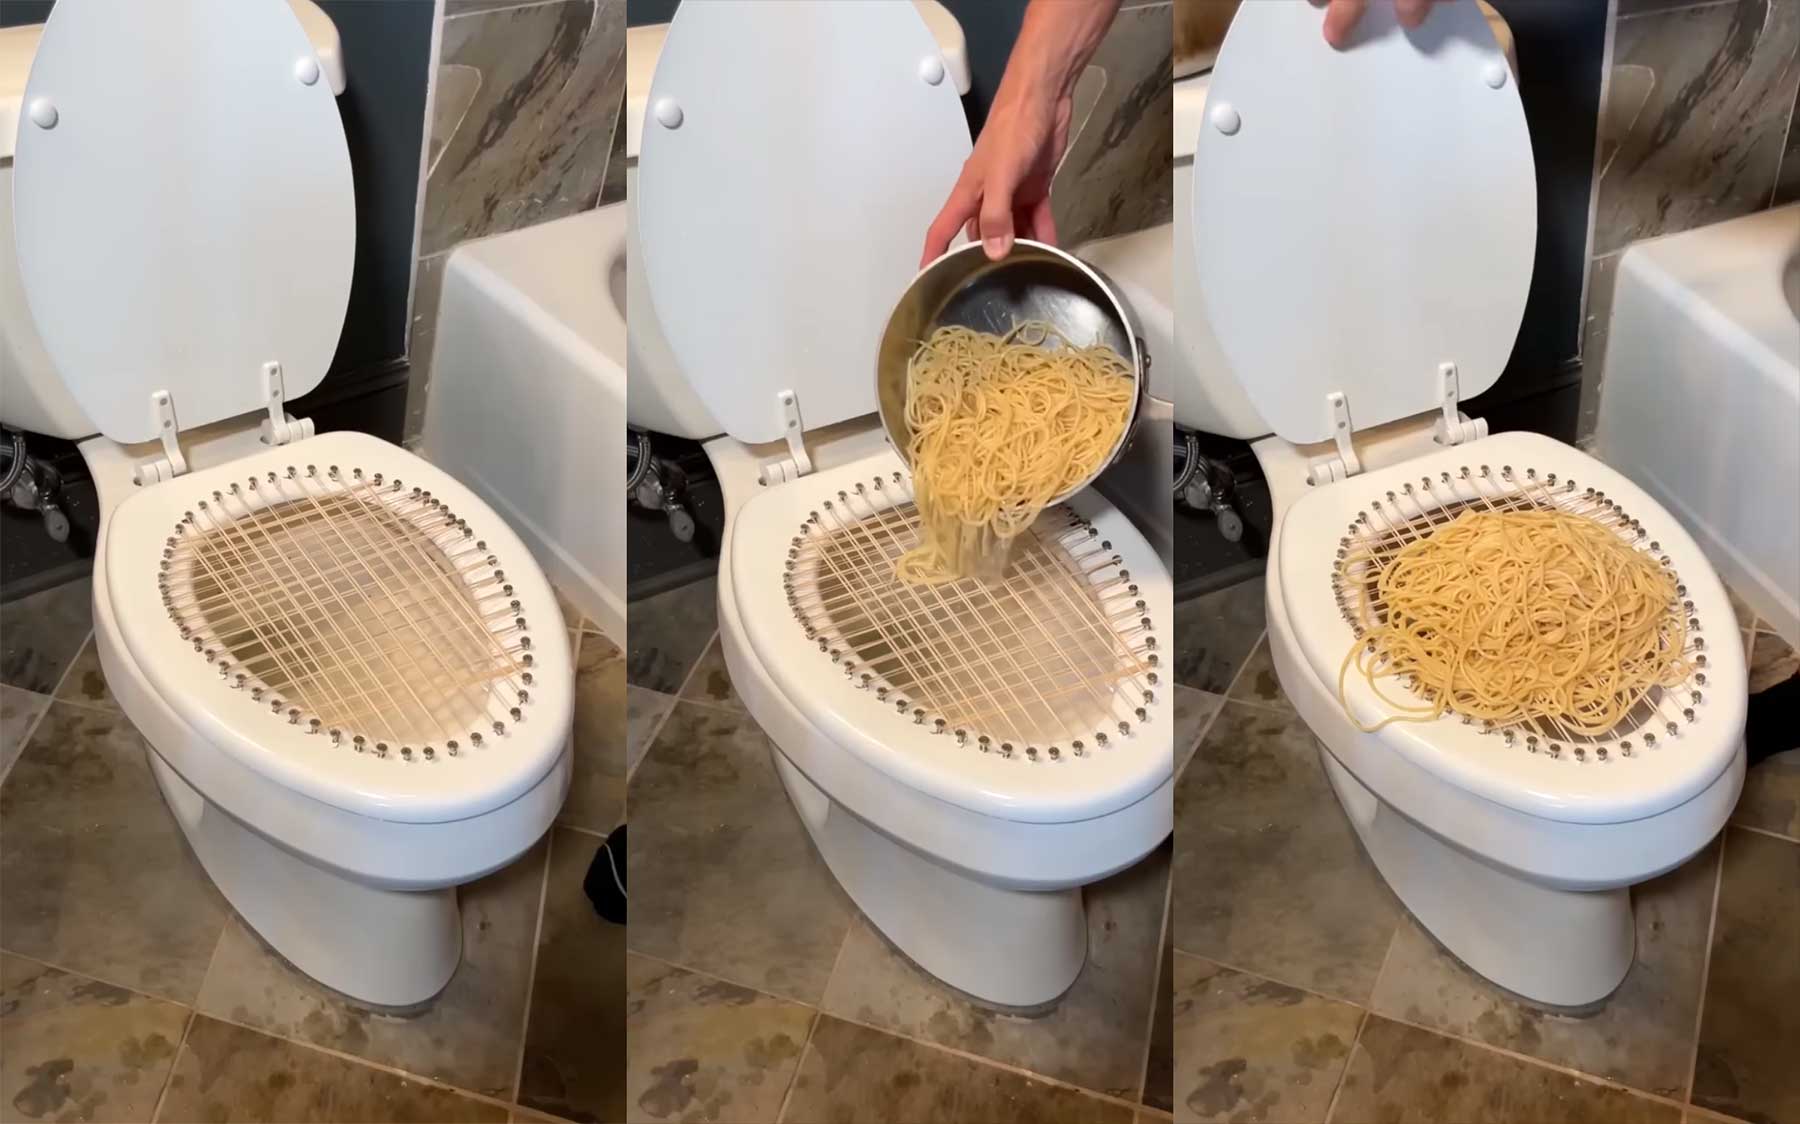 Pasta-Pott: Klobrille als Nudelsieb benutzen nudelsieb-toilette-klodeckel 